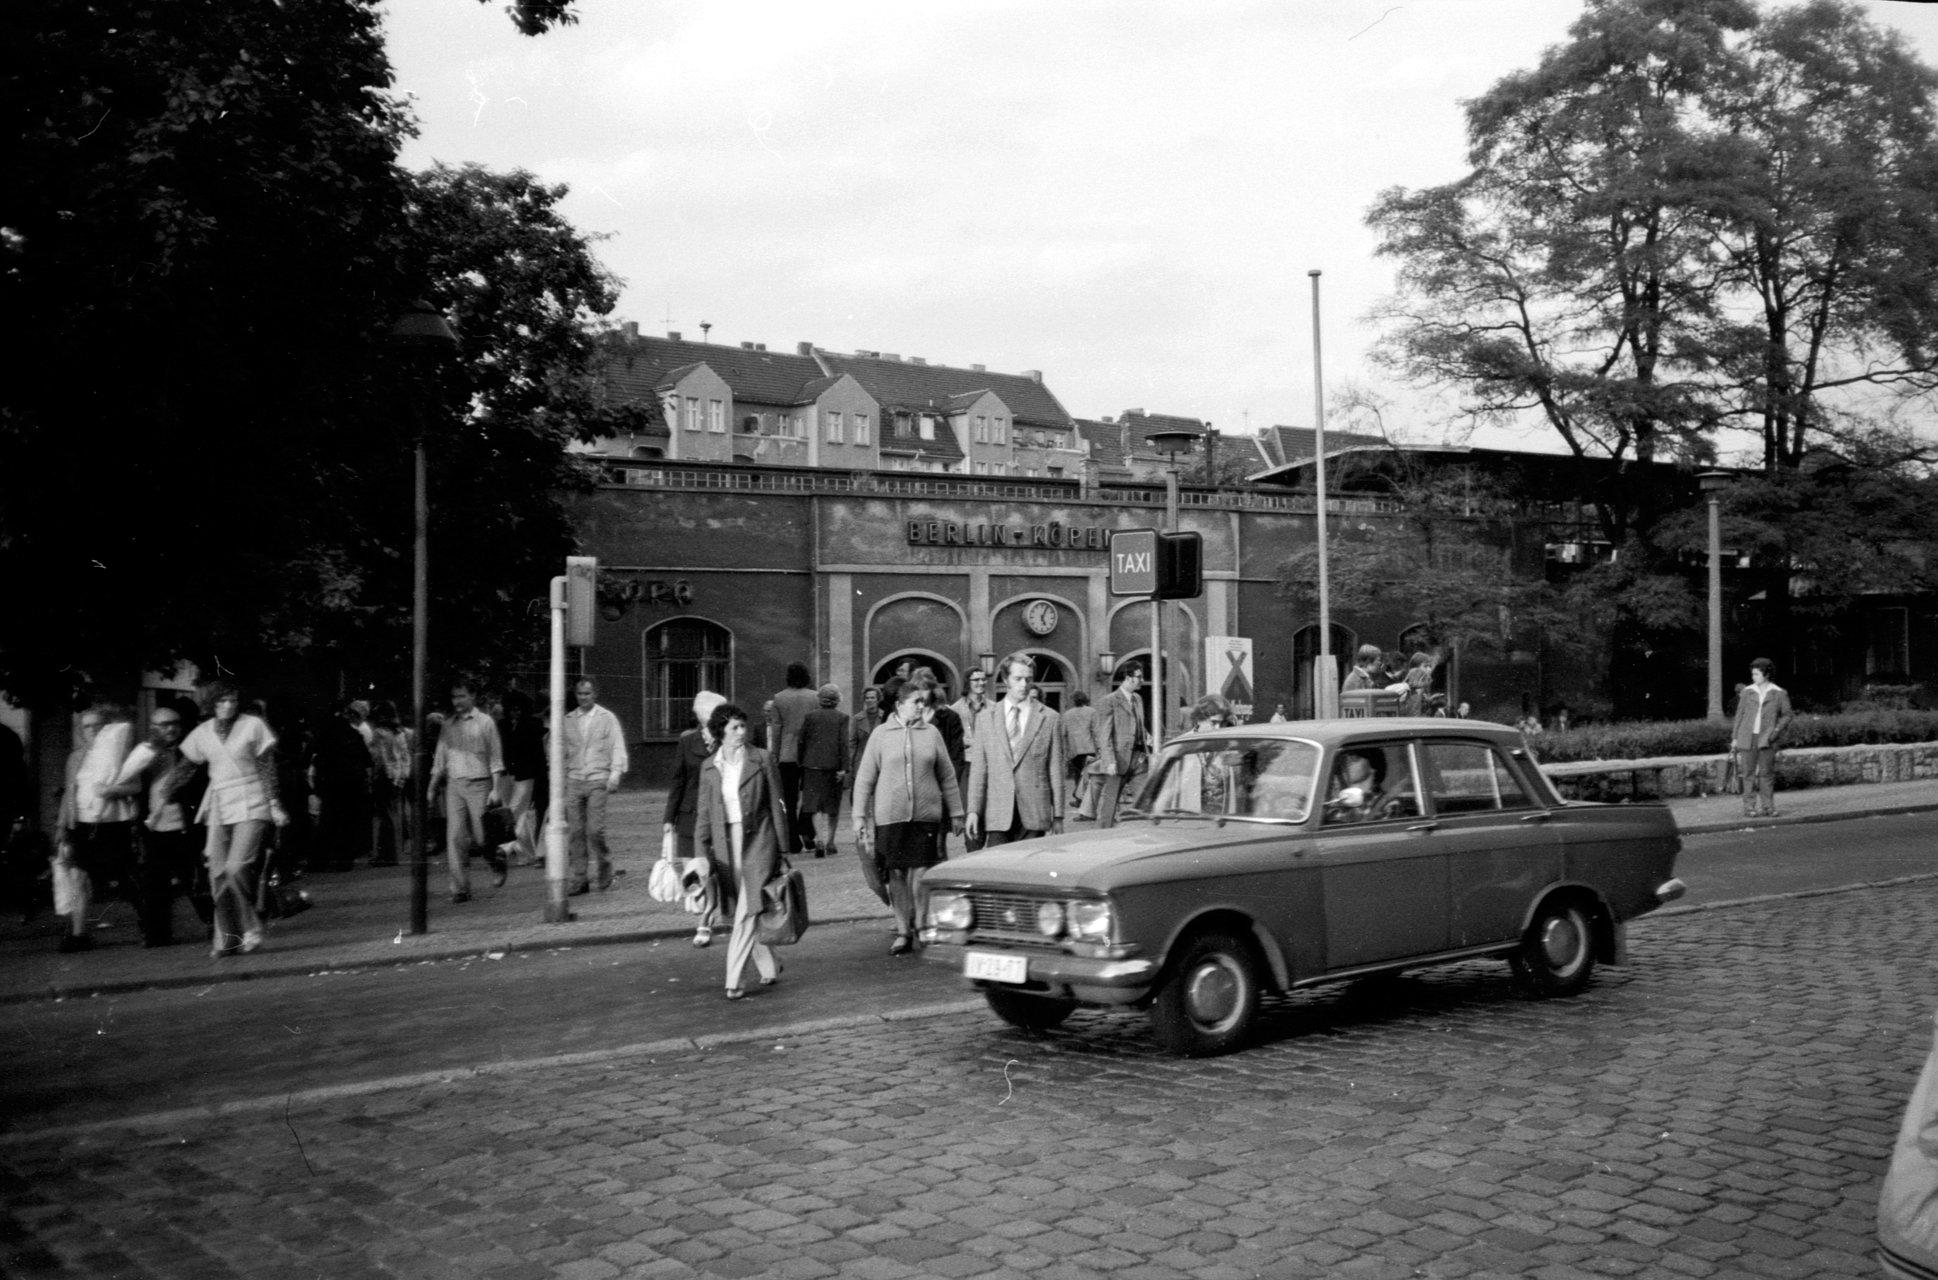 S-Bahnhof Berlin-Köpenick 1975